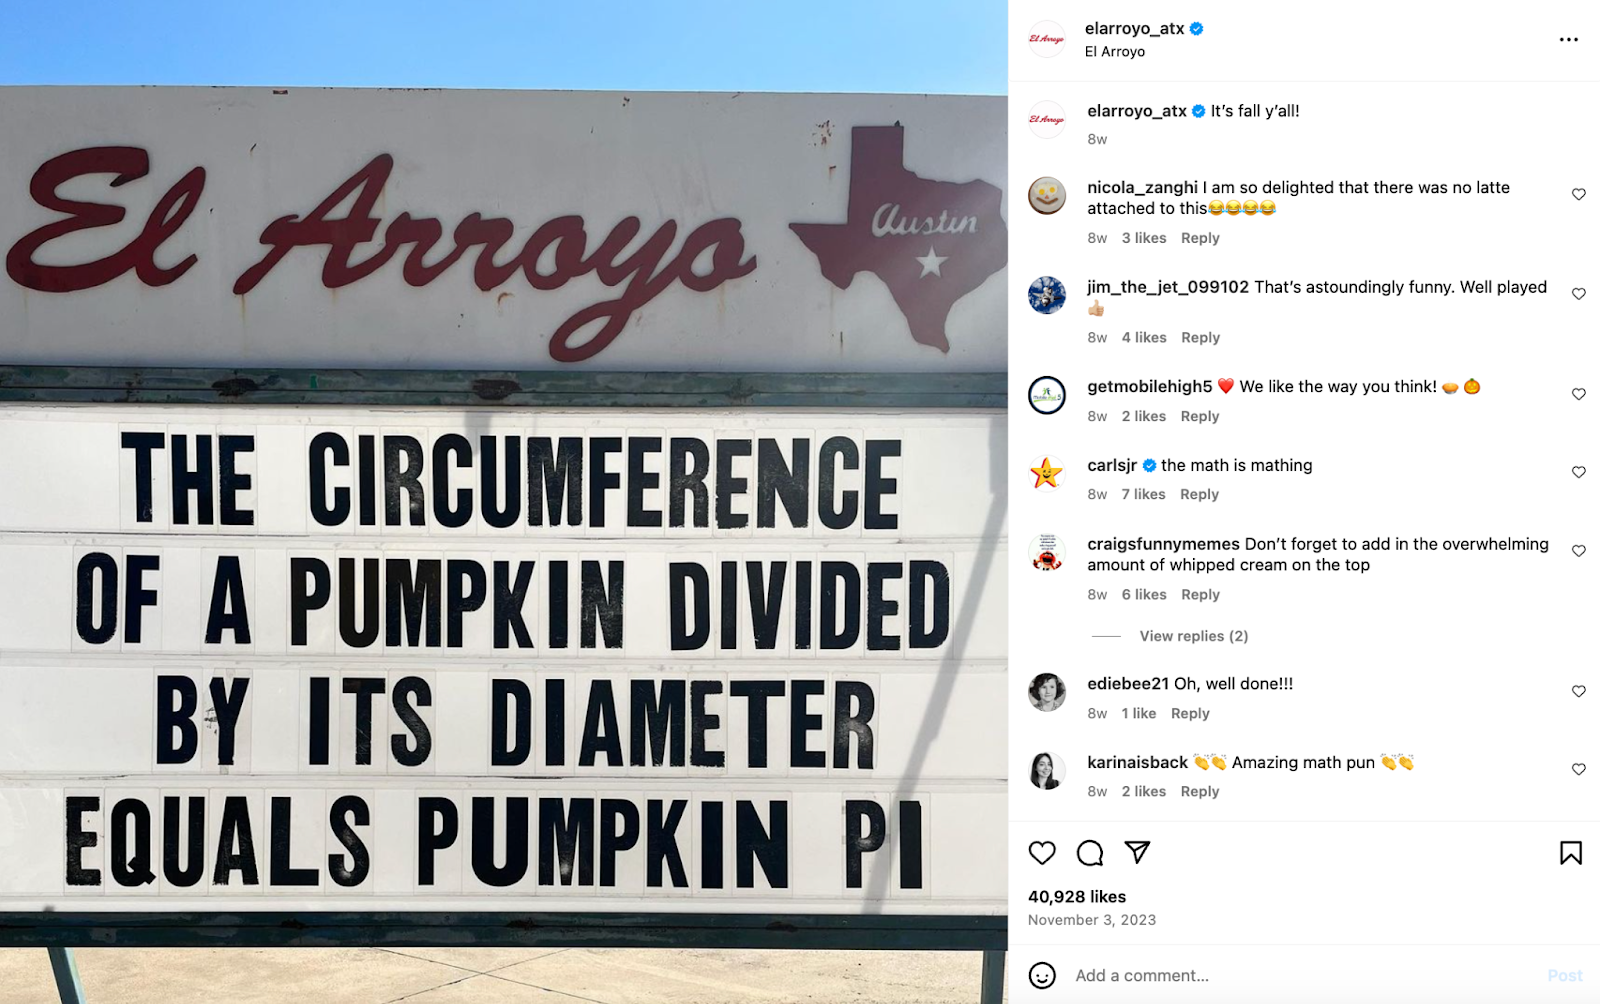 Ustvarjalne ideje za trženje restavracij: Restavracija El Arroyo s sedežem v Austinu je znana po svojem šotorskem znaku, ki prikazuje predrzne besede in šale.